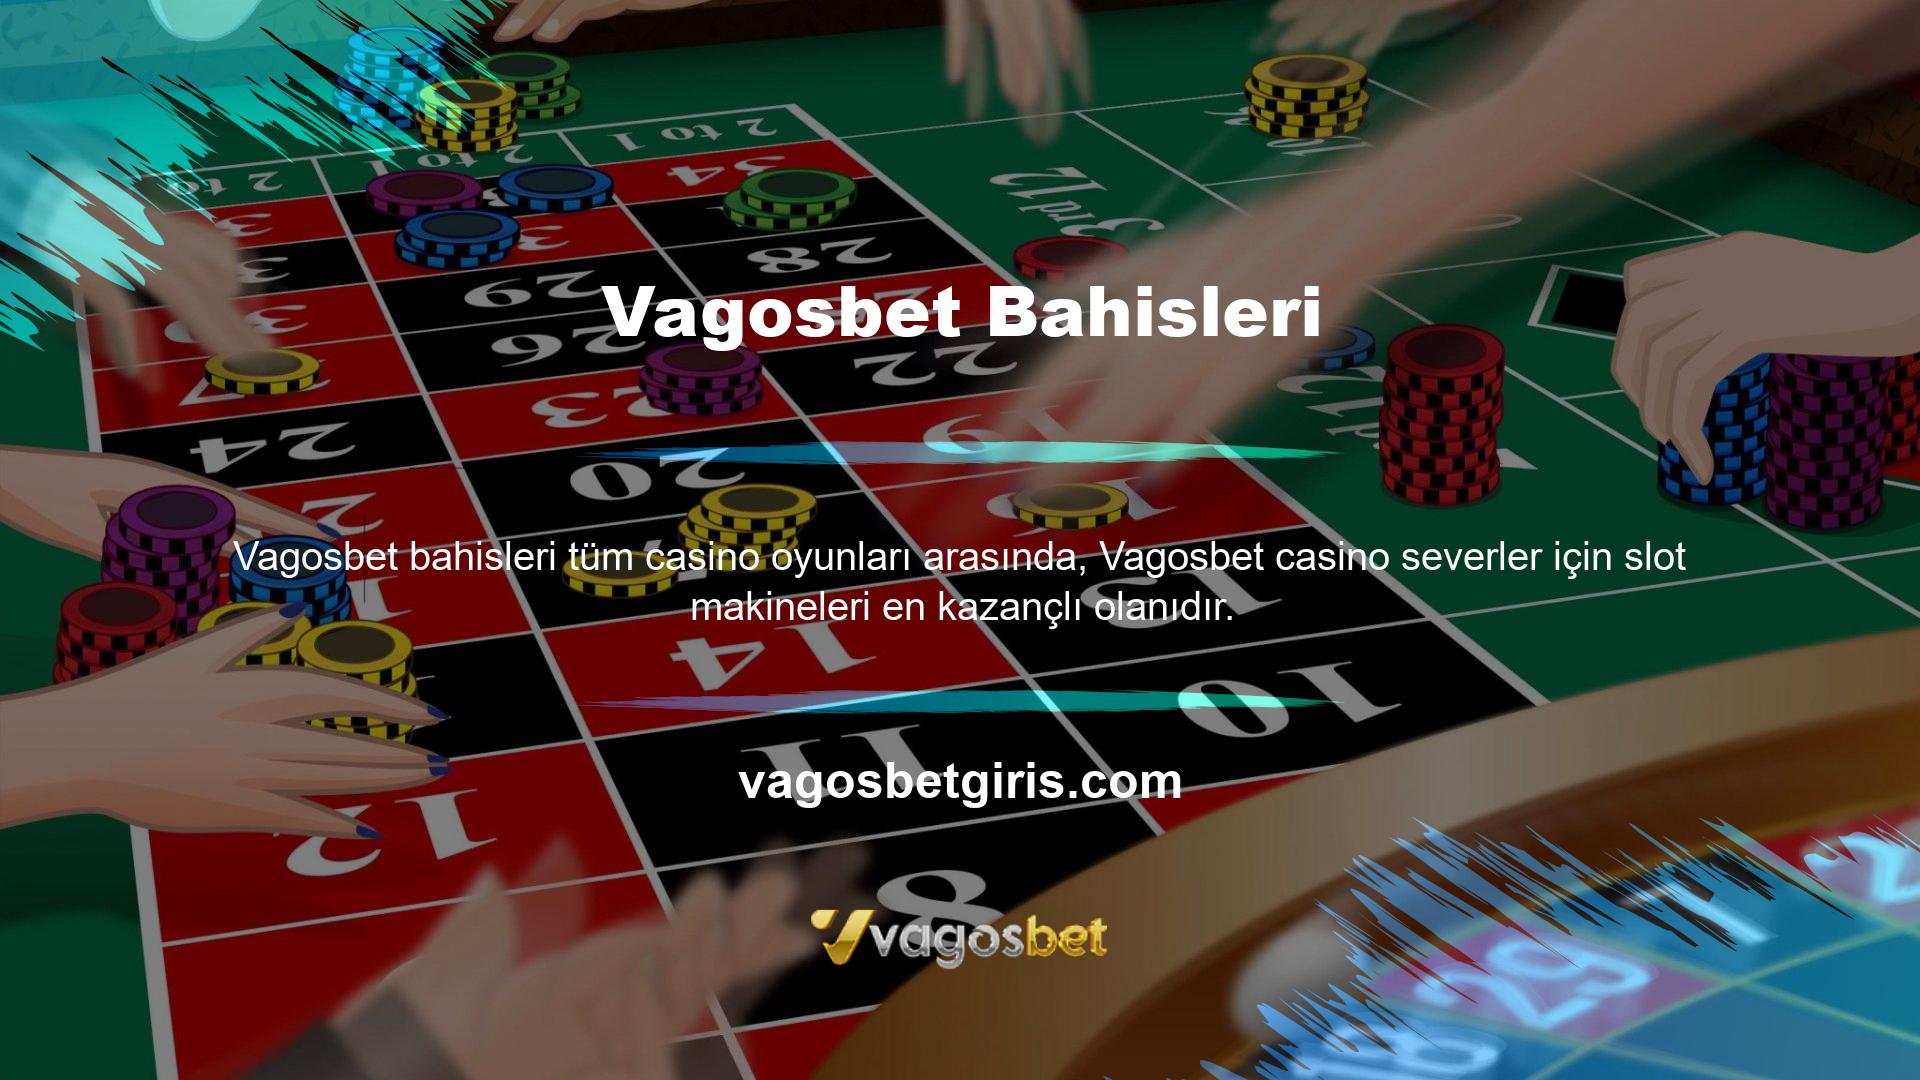 Slotlarda casino, şans ve servet biriktirme potansiyeli içeren bir oyundur